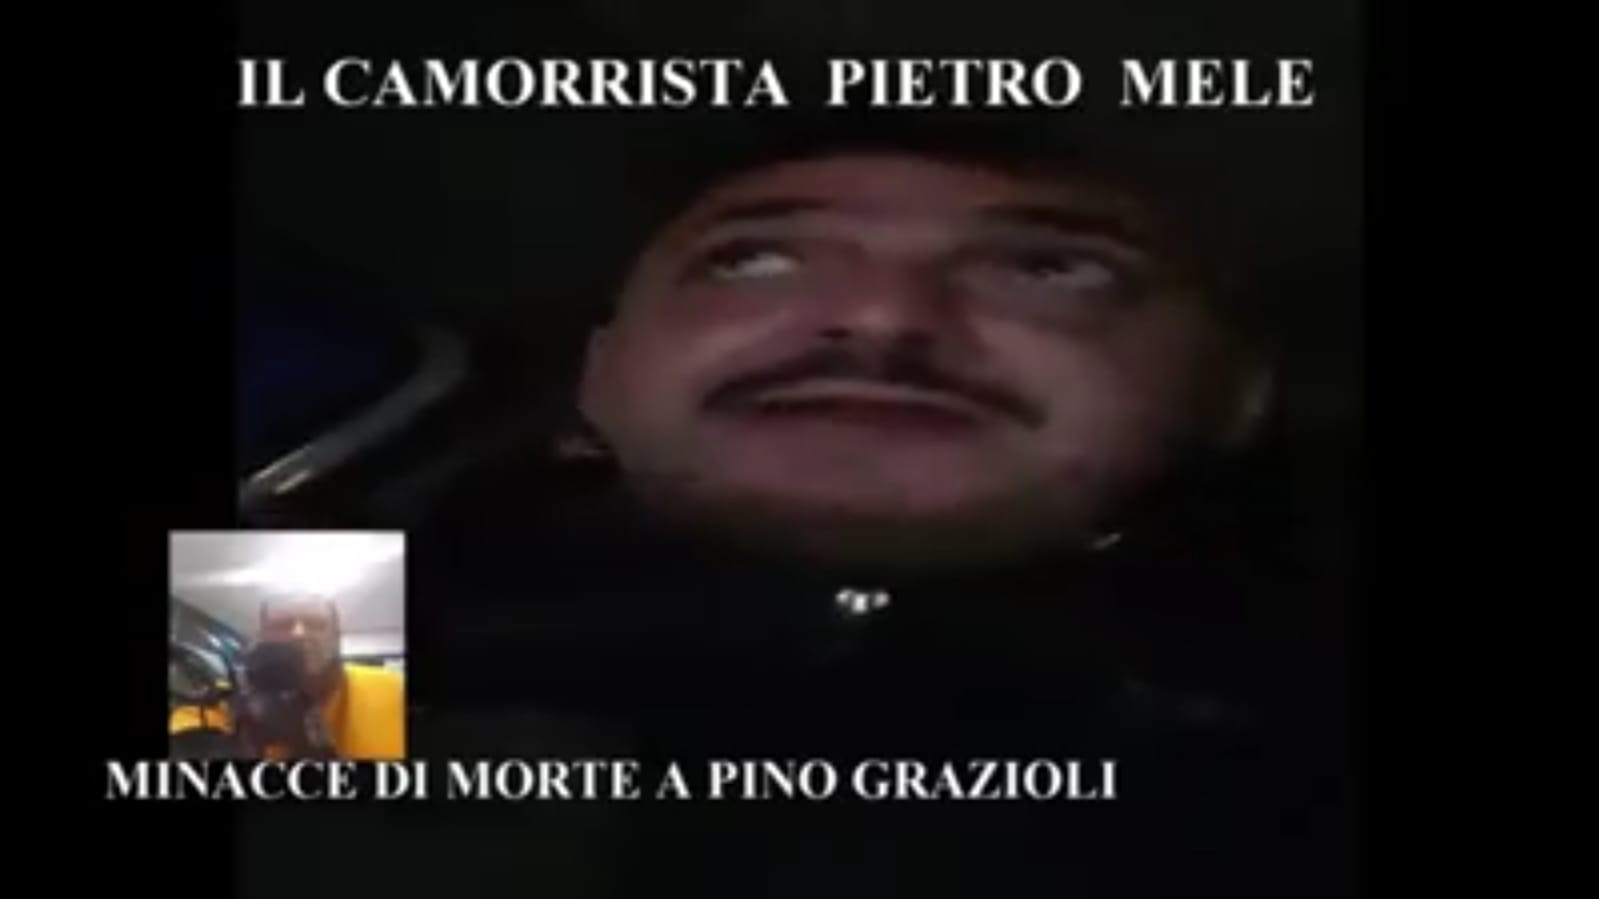 Terra dei Fuochi. Minacce all’attivista Pino Grazioli: ‘Ti sparo nelle finestre’. Borrelli (Verdi): ‘Con la sua attività sta pestando i piedi a delinquenti e camorristi’ (VIDEO)